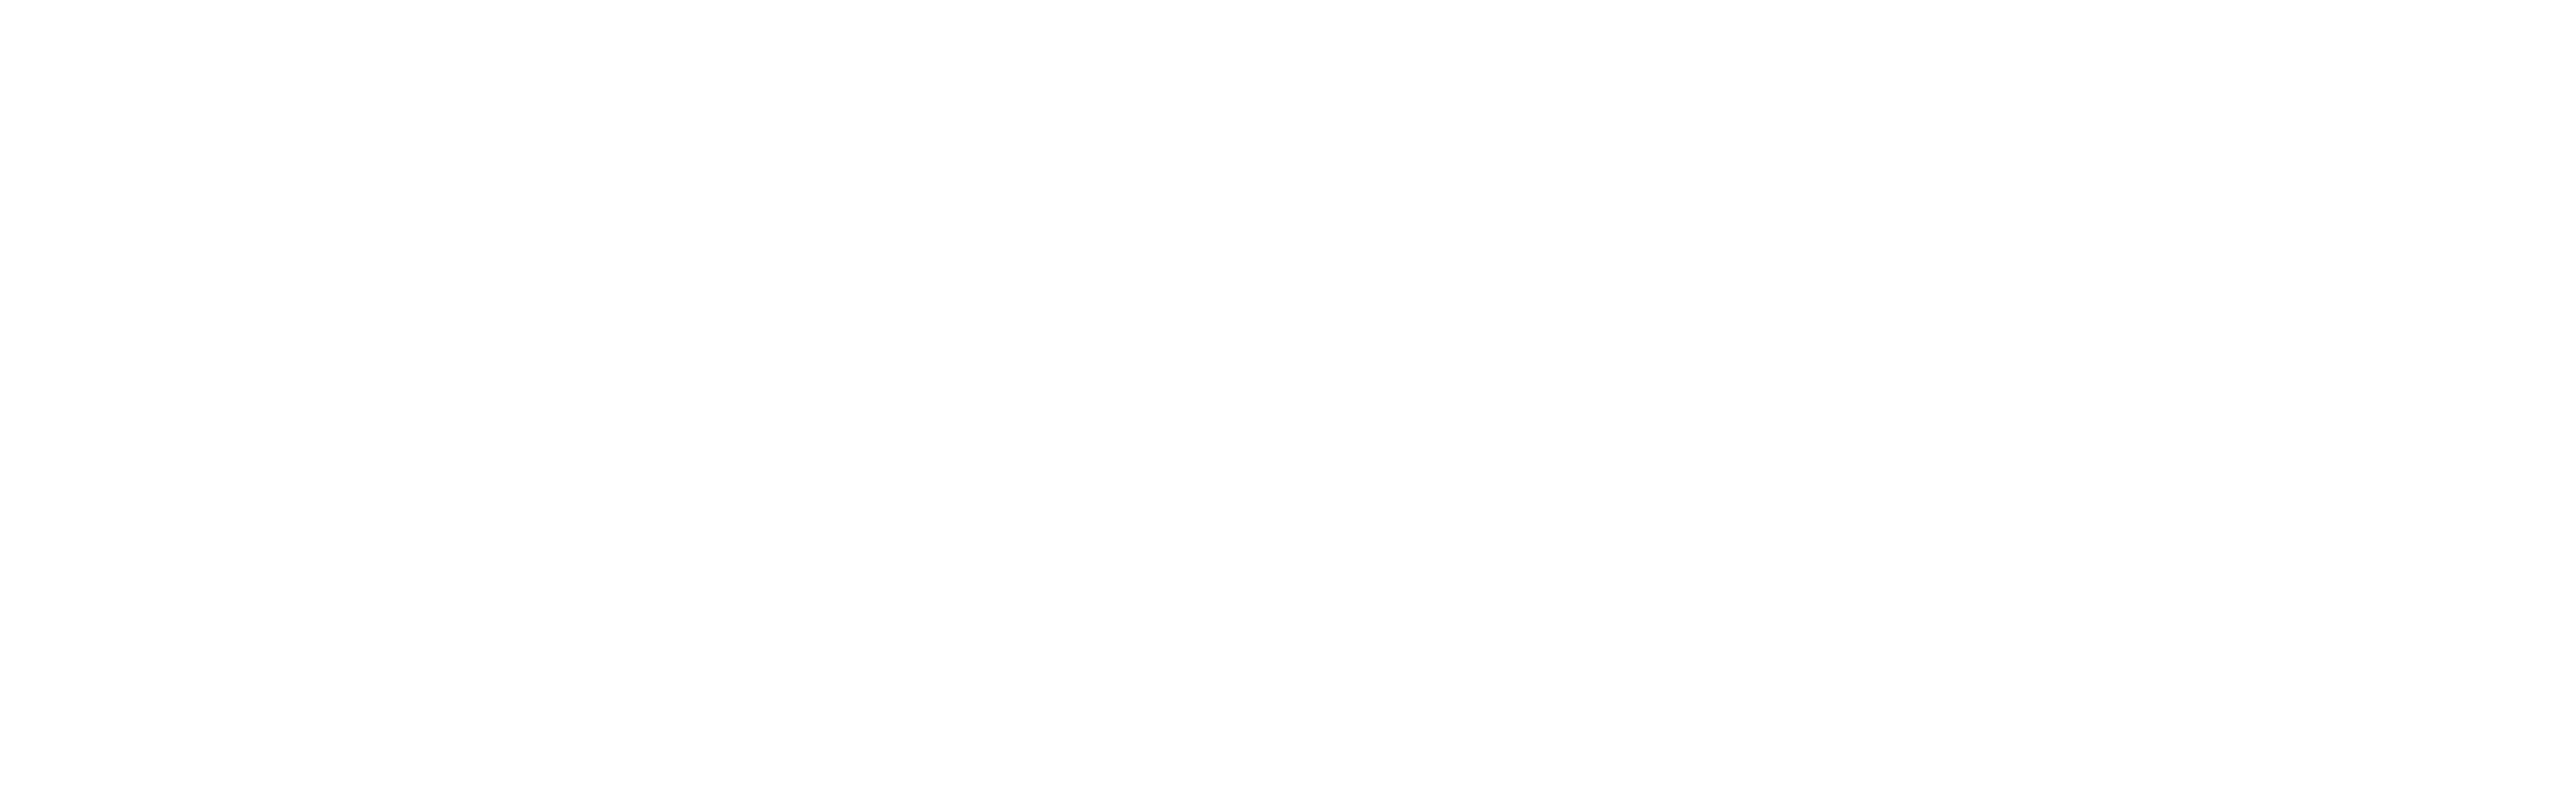 Tami Savage | 